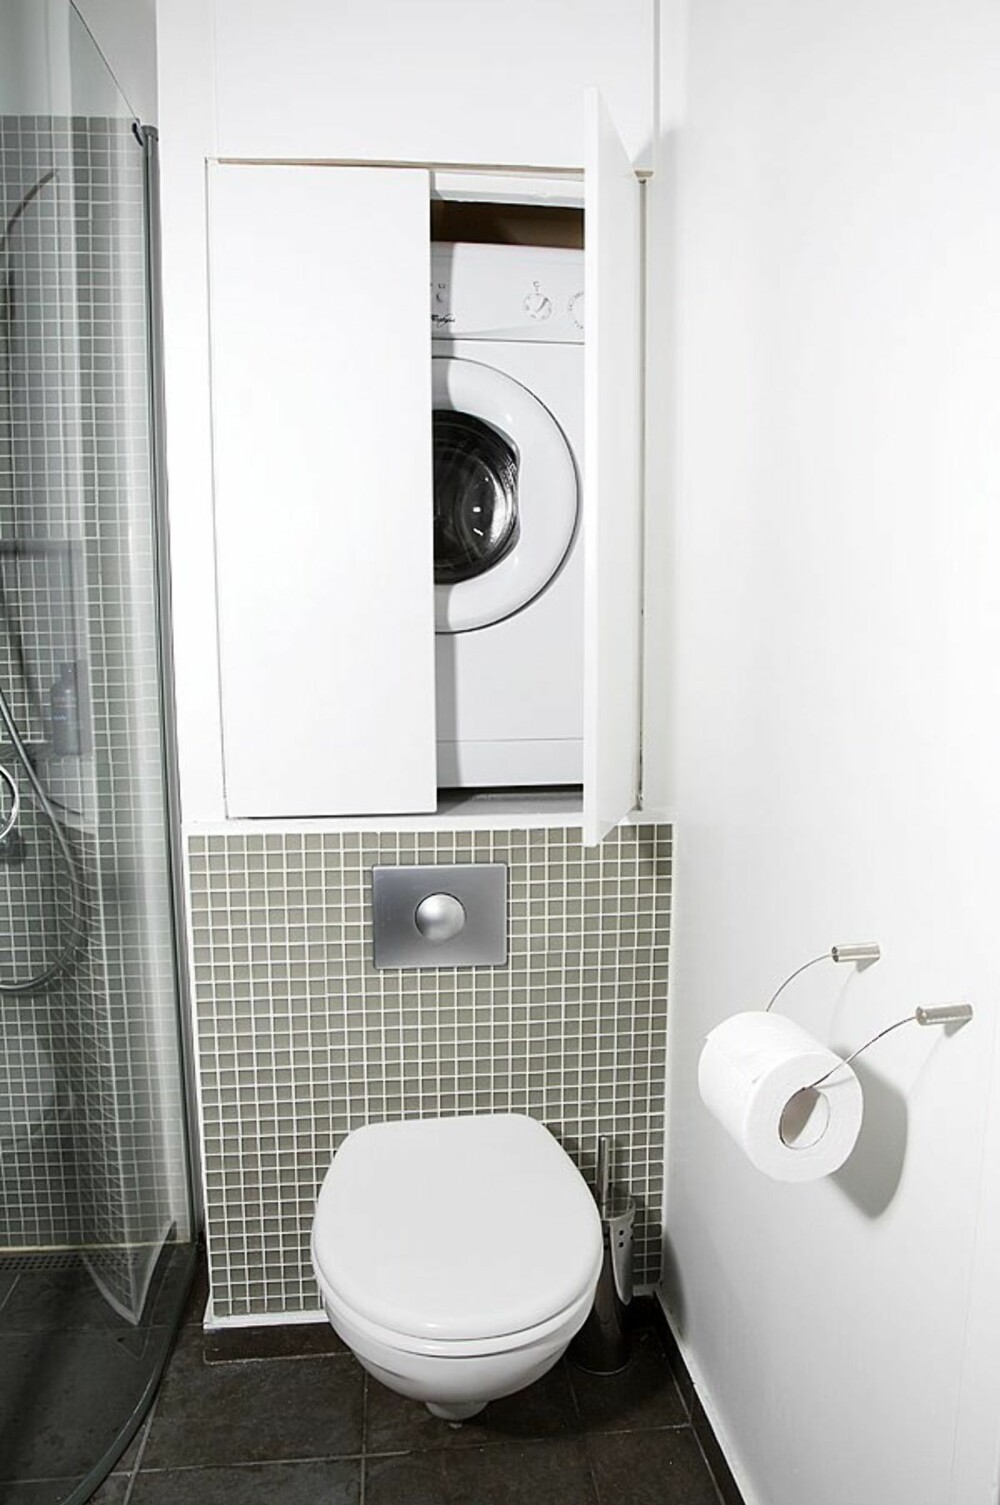 TENK PRAKTISK: Utnytt plasser du ellers ikke ville tenk på til smart oppbevaring. Her er en vaskemaskin diskret plassert inn i veggen. FOTO: Produsenten